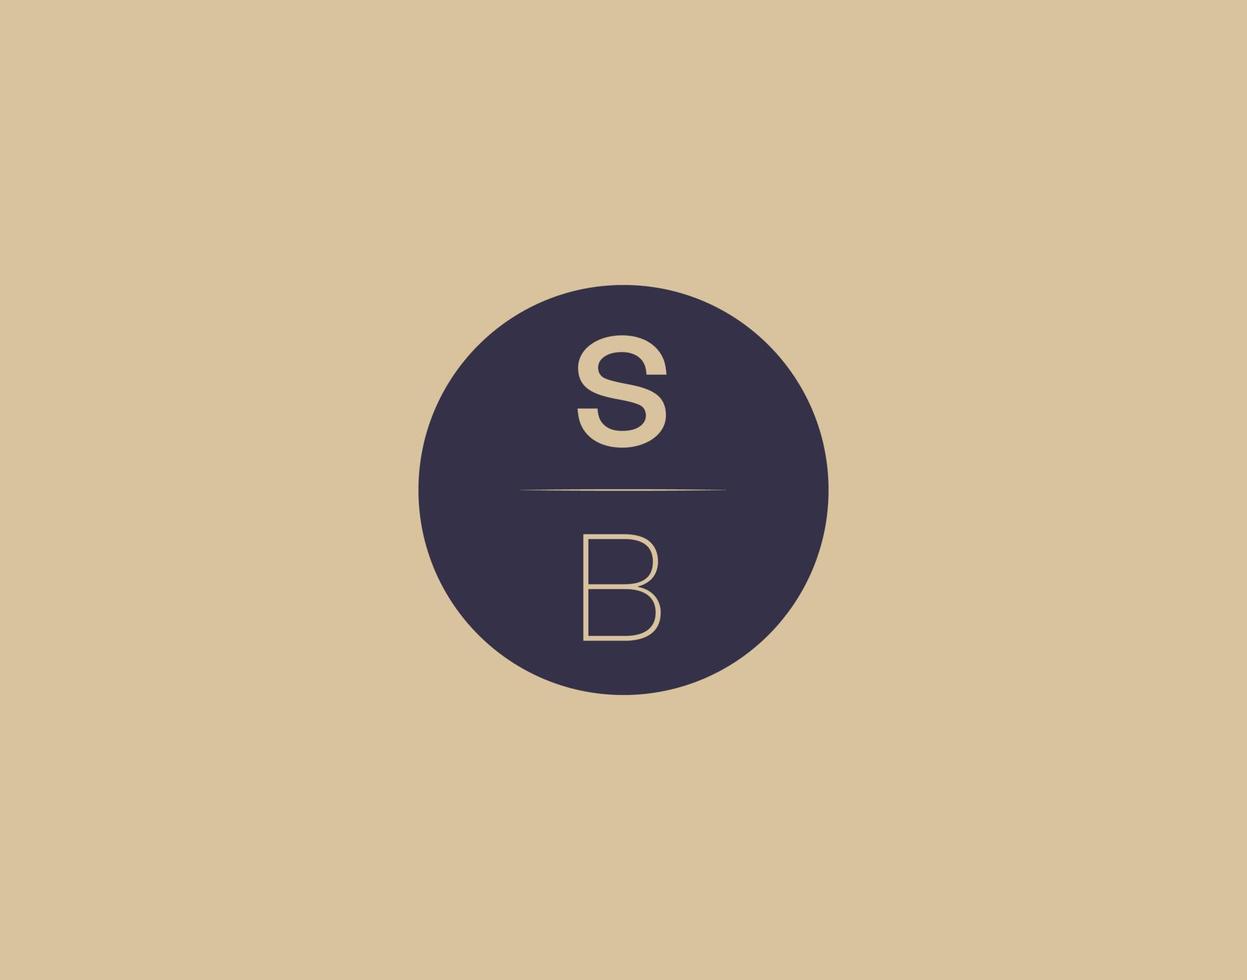 sb brief modern elegant logo ontwerp vector afbeeldingen